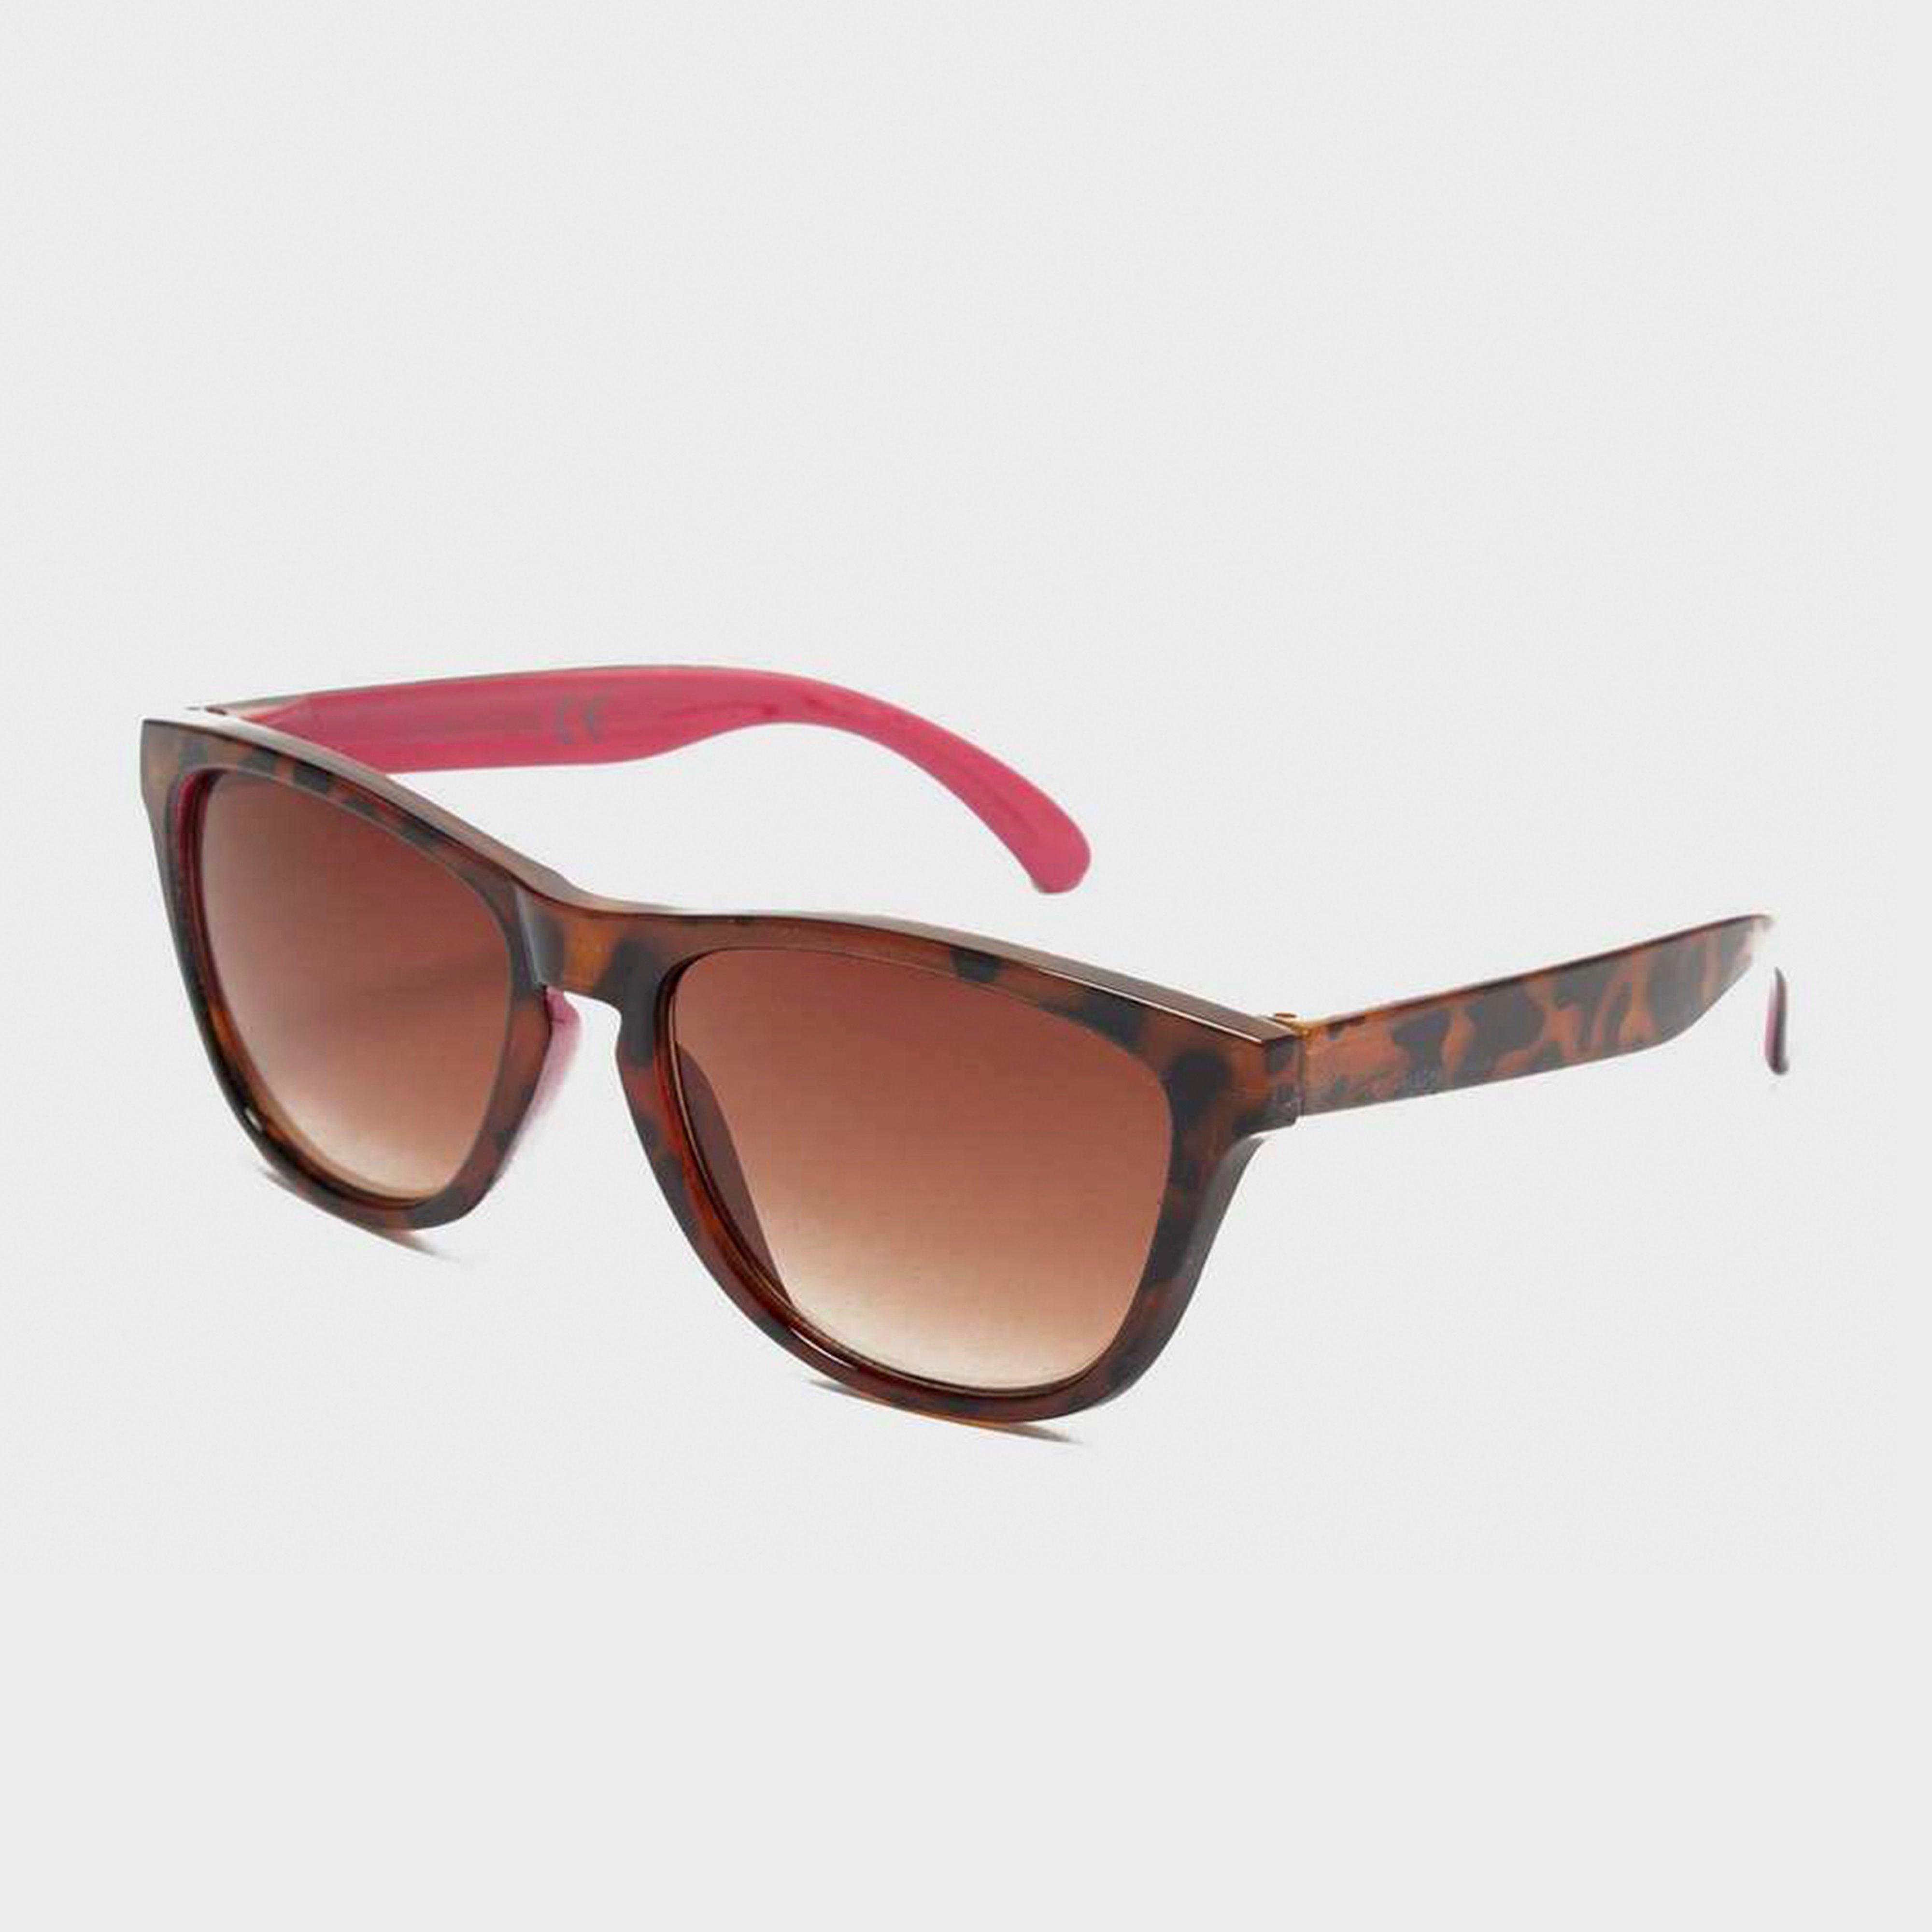 Peter Storm Kids Tortoise Sunglasses - Brown/brn  Brown/brn